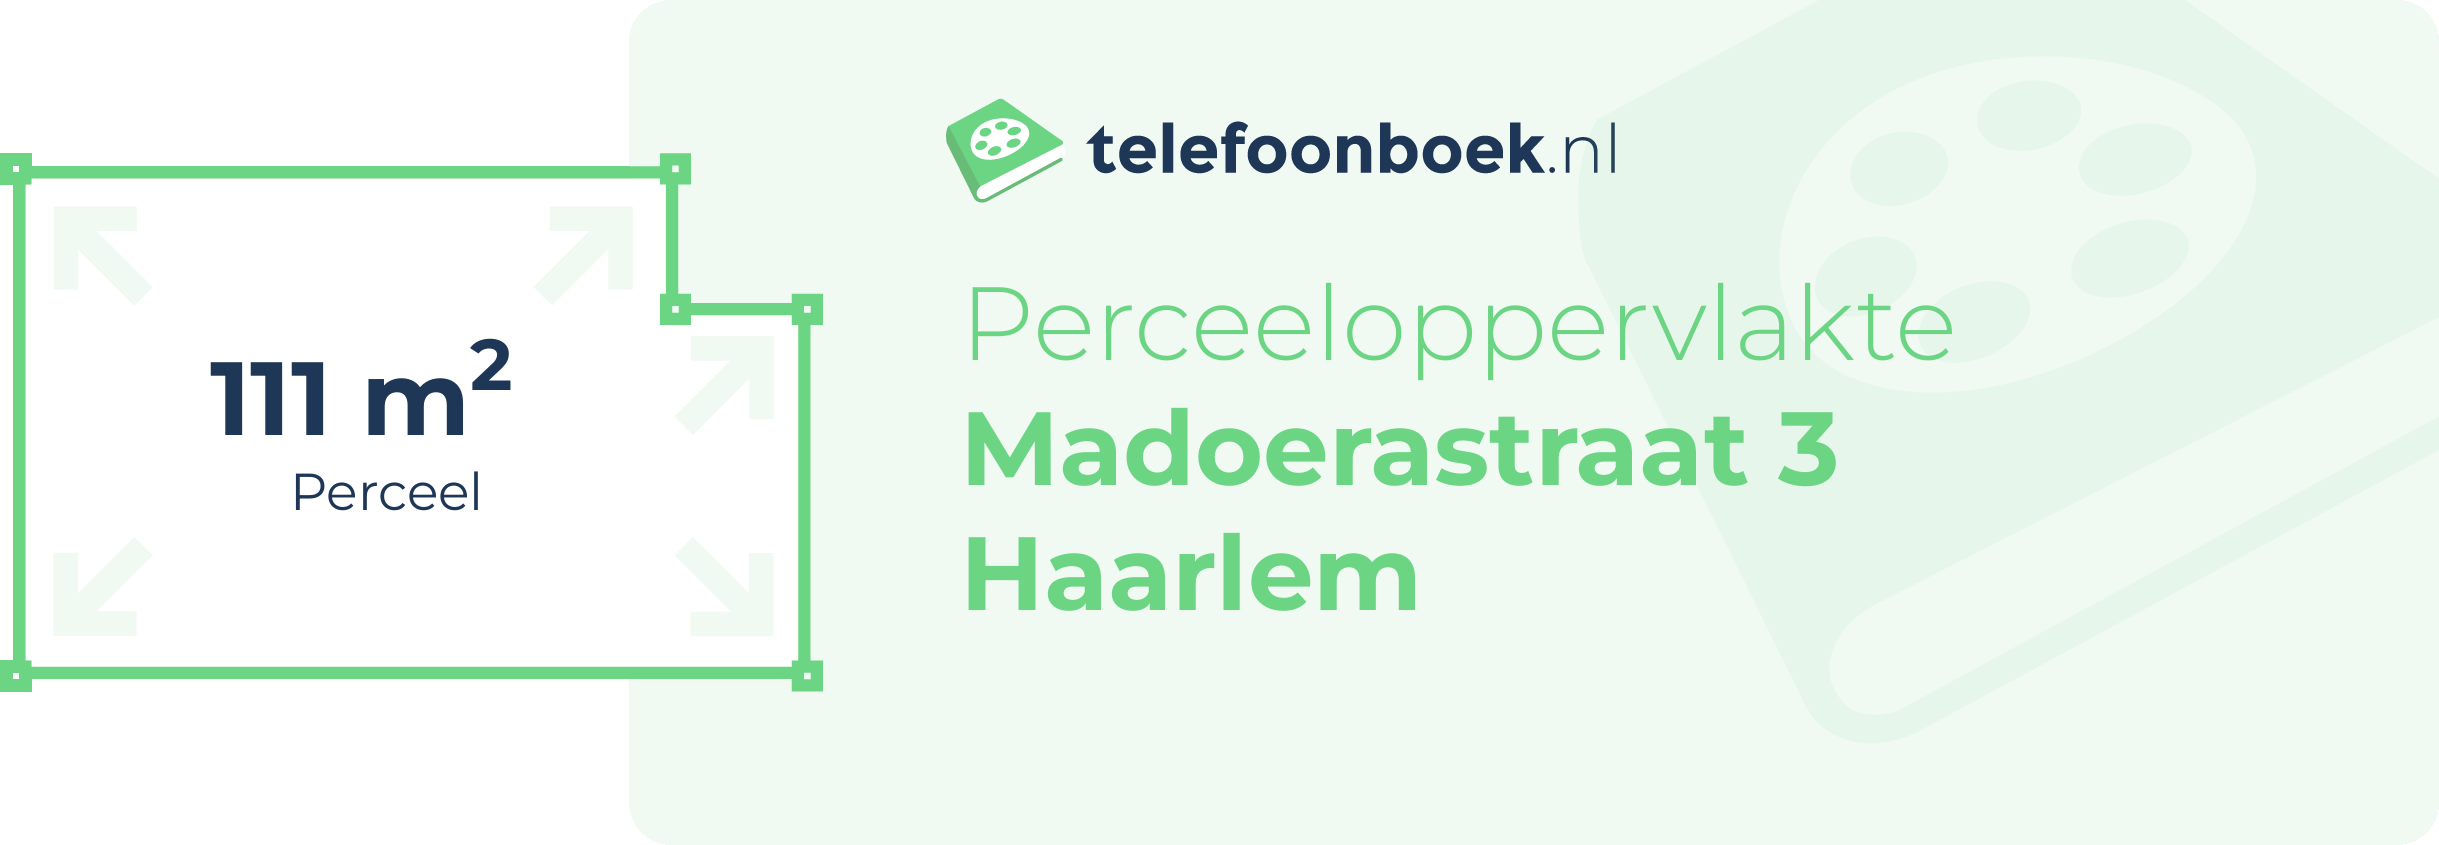 Perceeloppervlakte Madoerastraat 3 Haarlem